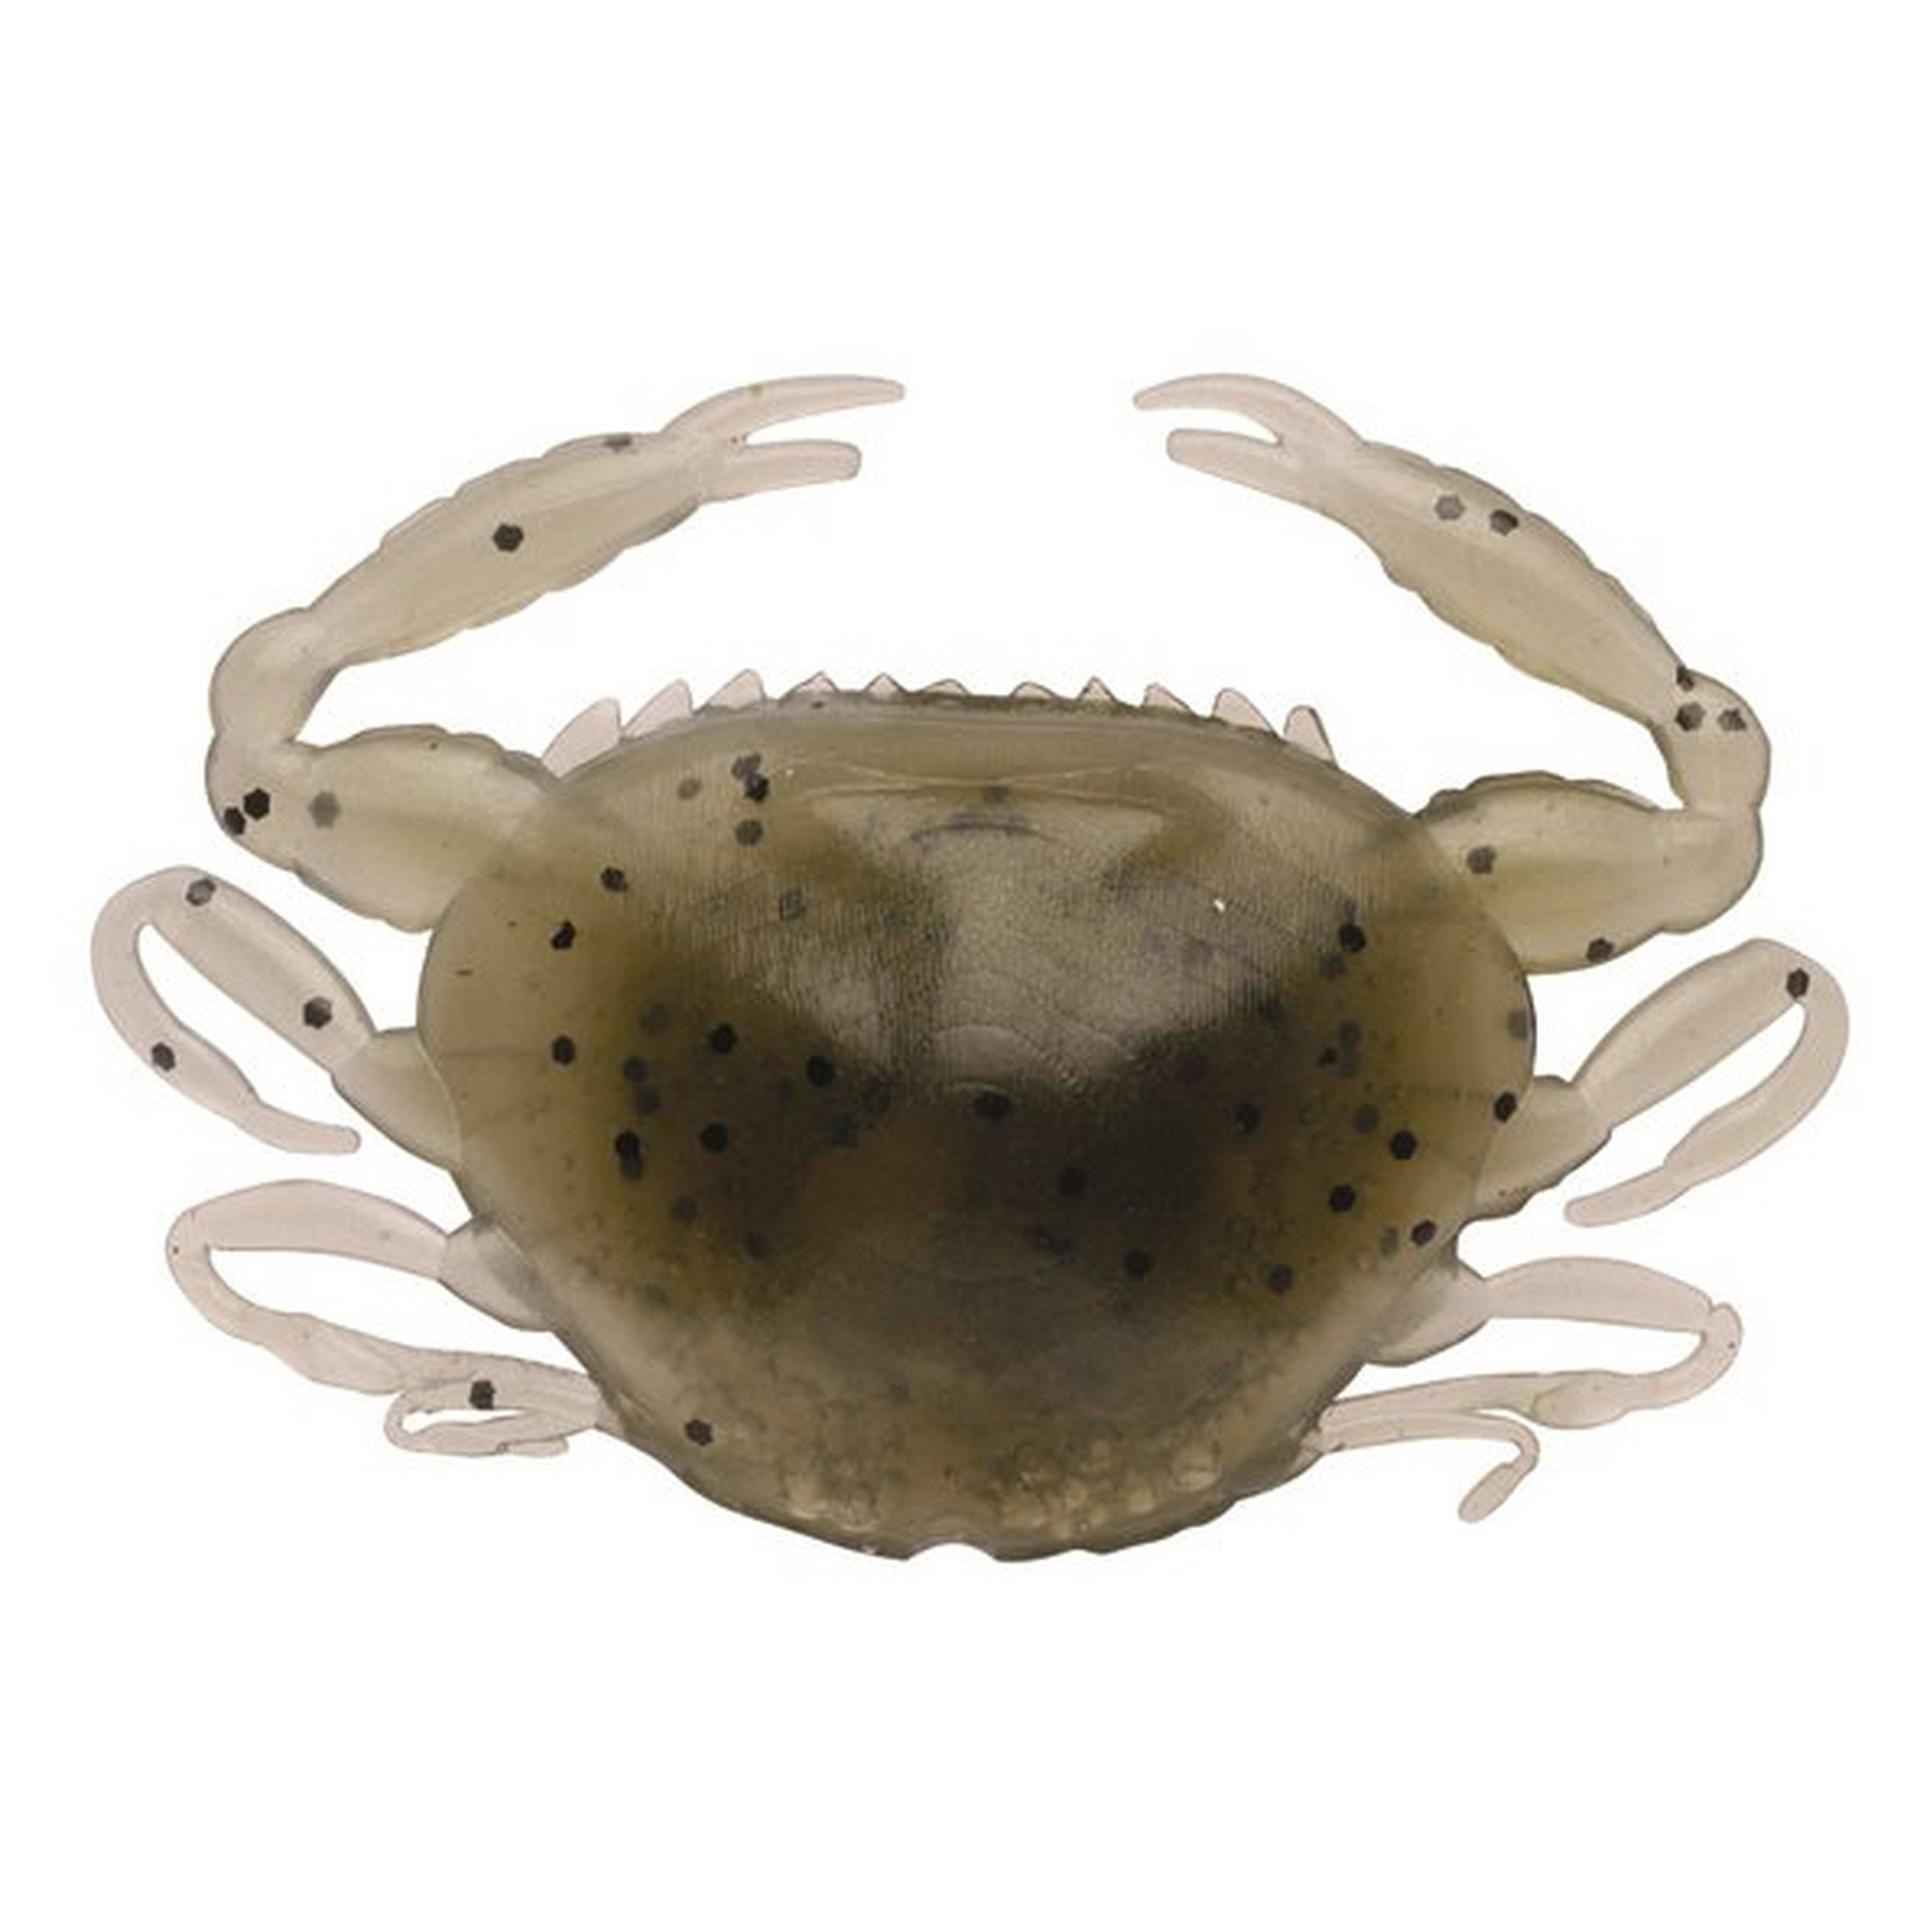 Gulp!® Saltwater Peeler Crab